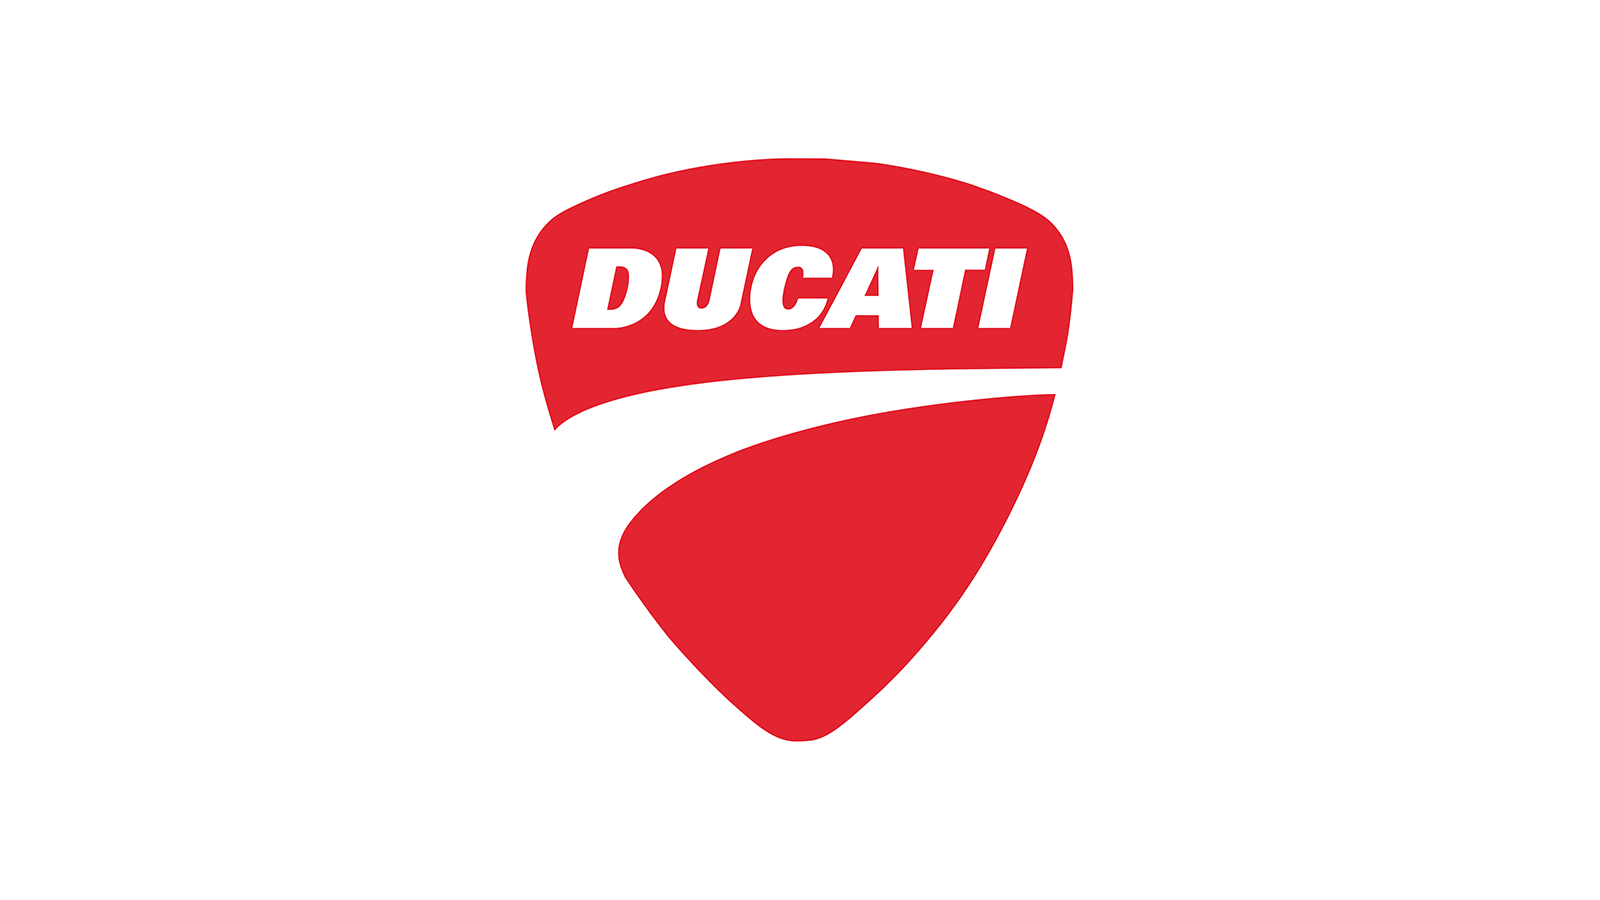 Ducati Font Logo | My dafont free